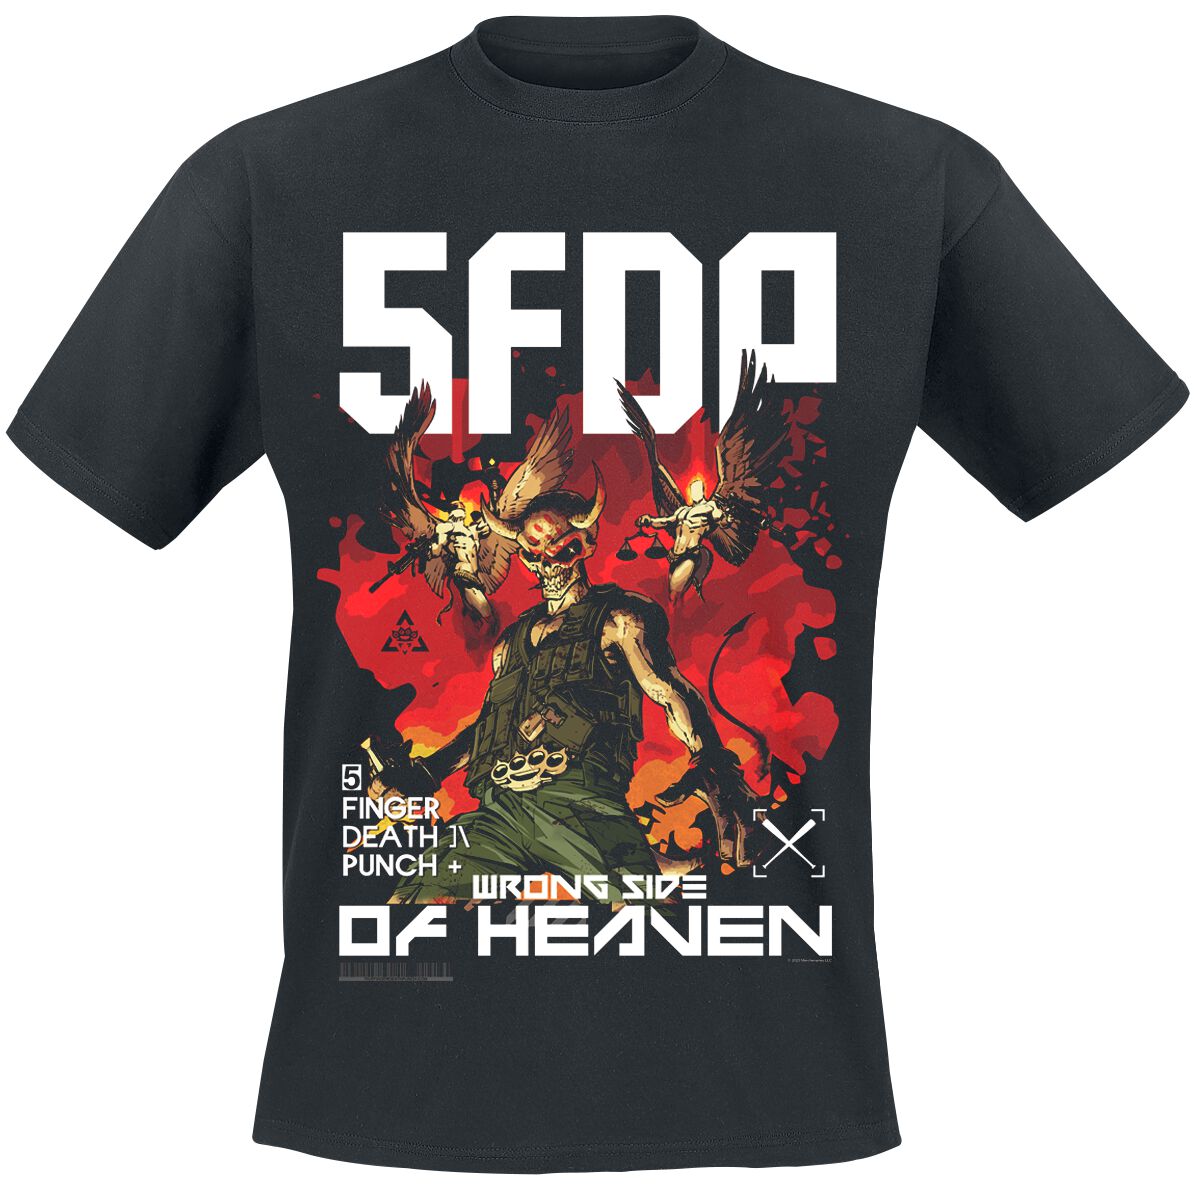 Five Finger Death Punch T-Shirt - Anniversary Wrong Side Of Heaven - S bis 3XL - für Männer - Größe M - schwarz  - Lizenziertes Merchandise!